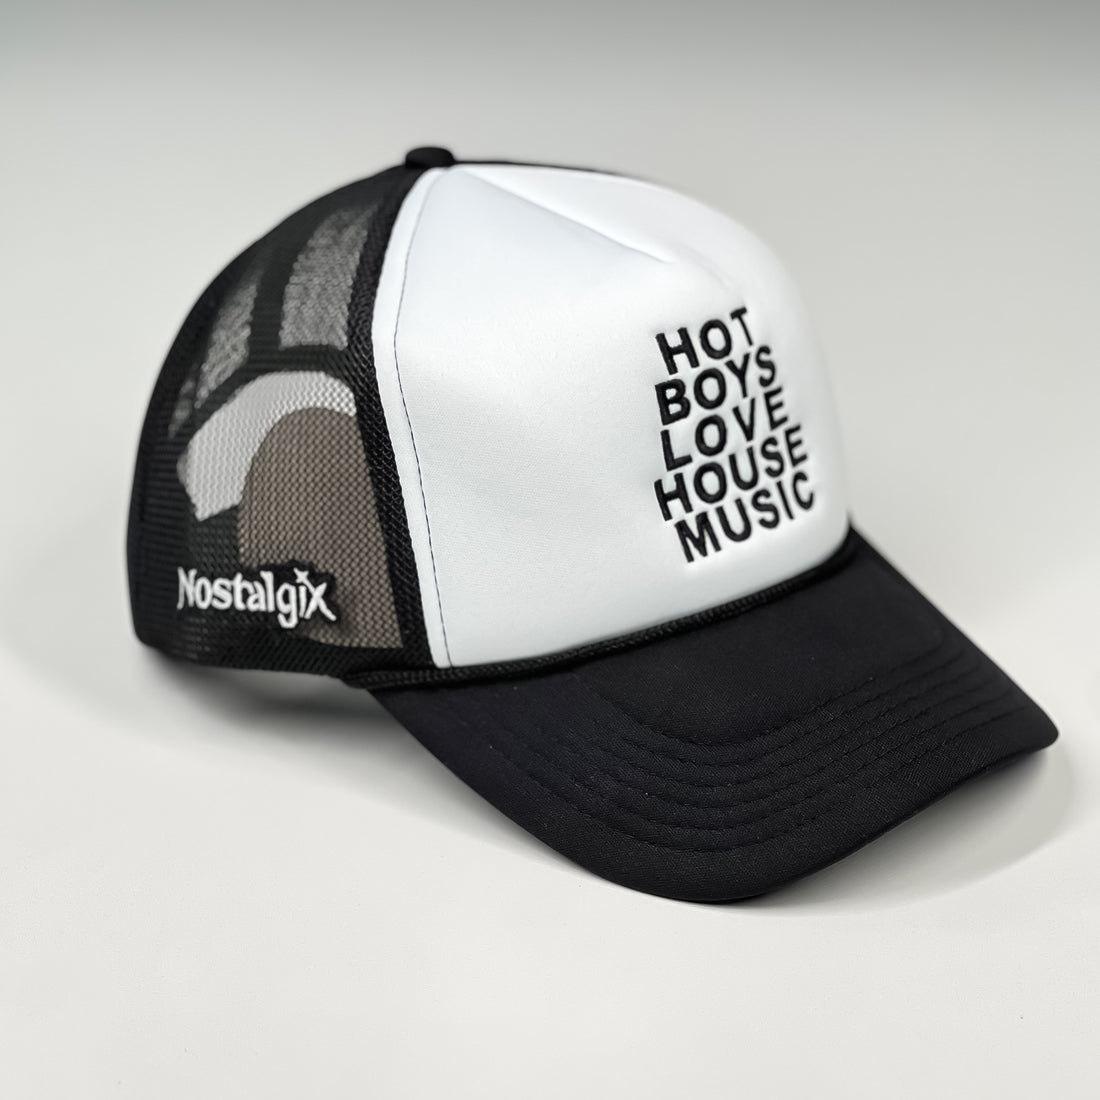 Nostalgix - Hot Boys Love House Music - Black & White Trucker Hat